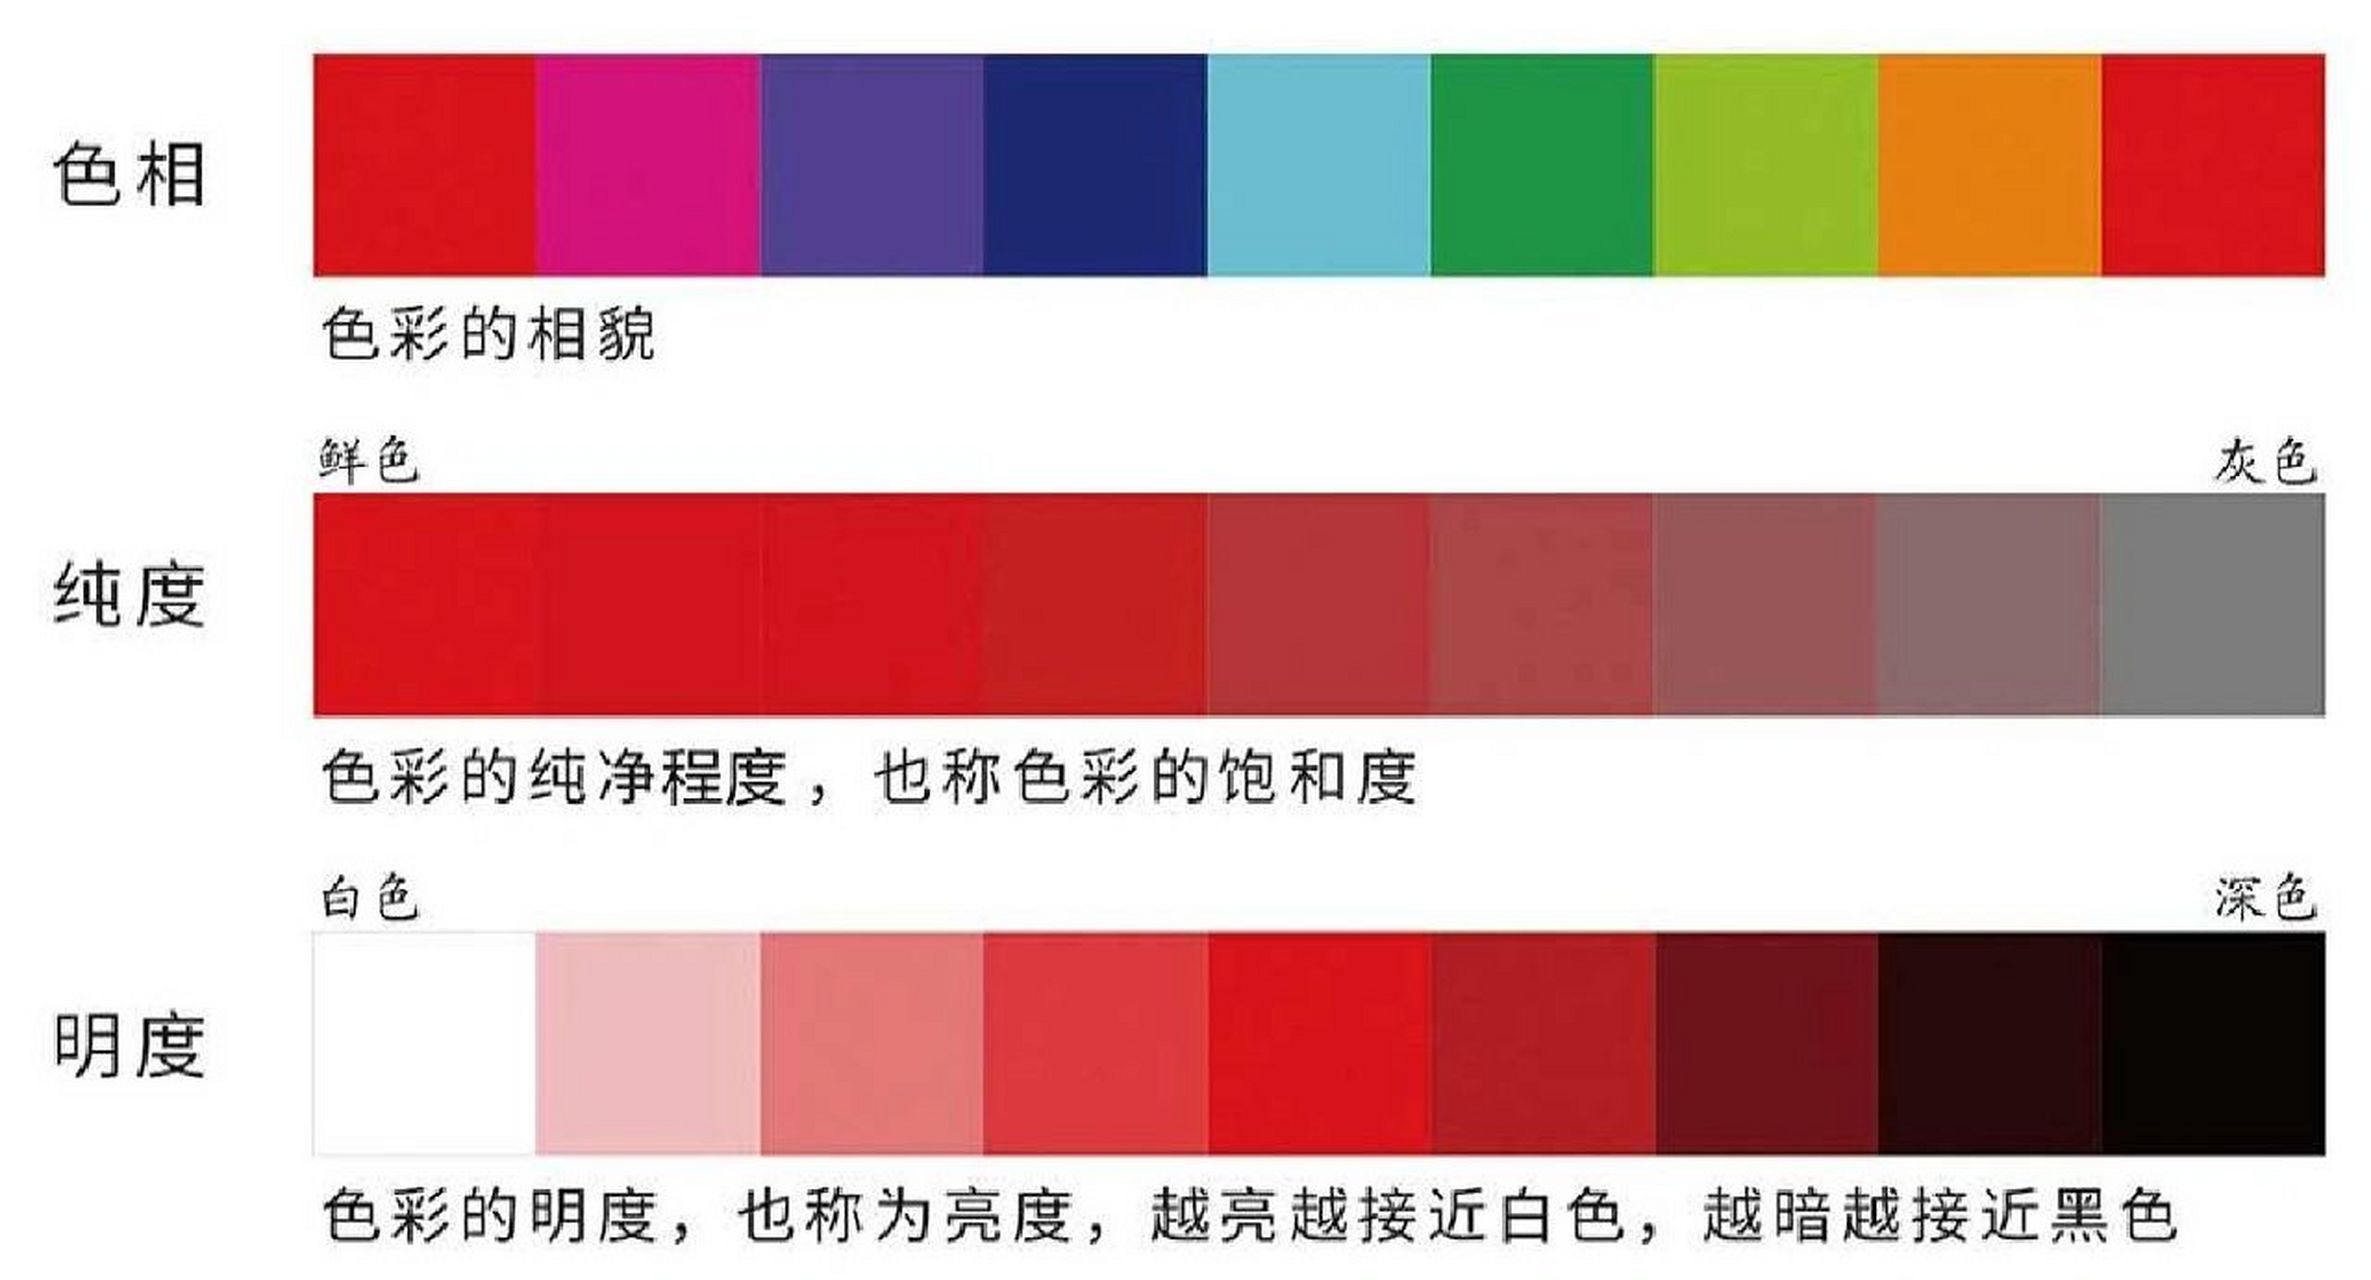 一张图让你分清色彩的纯度和明度 有彩色系中的每种颜色都具有色相